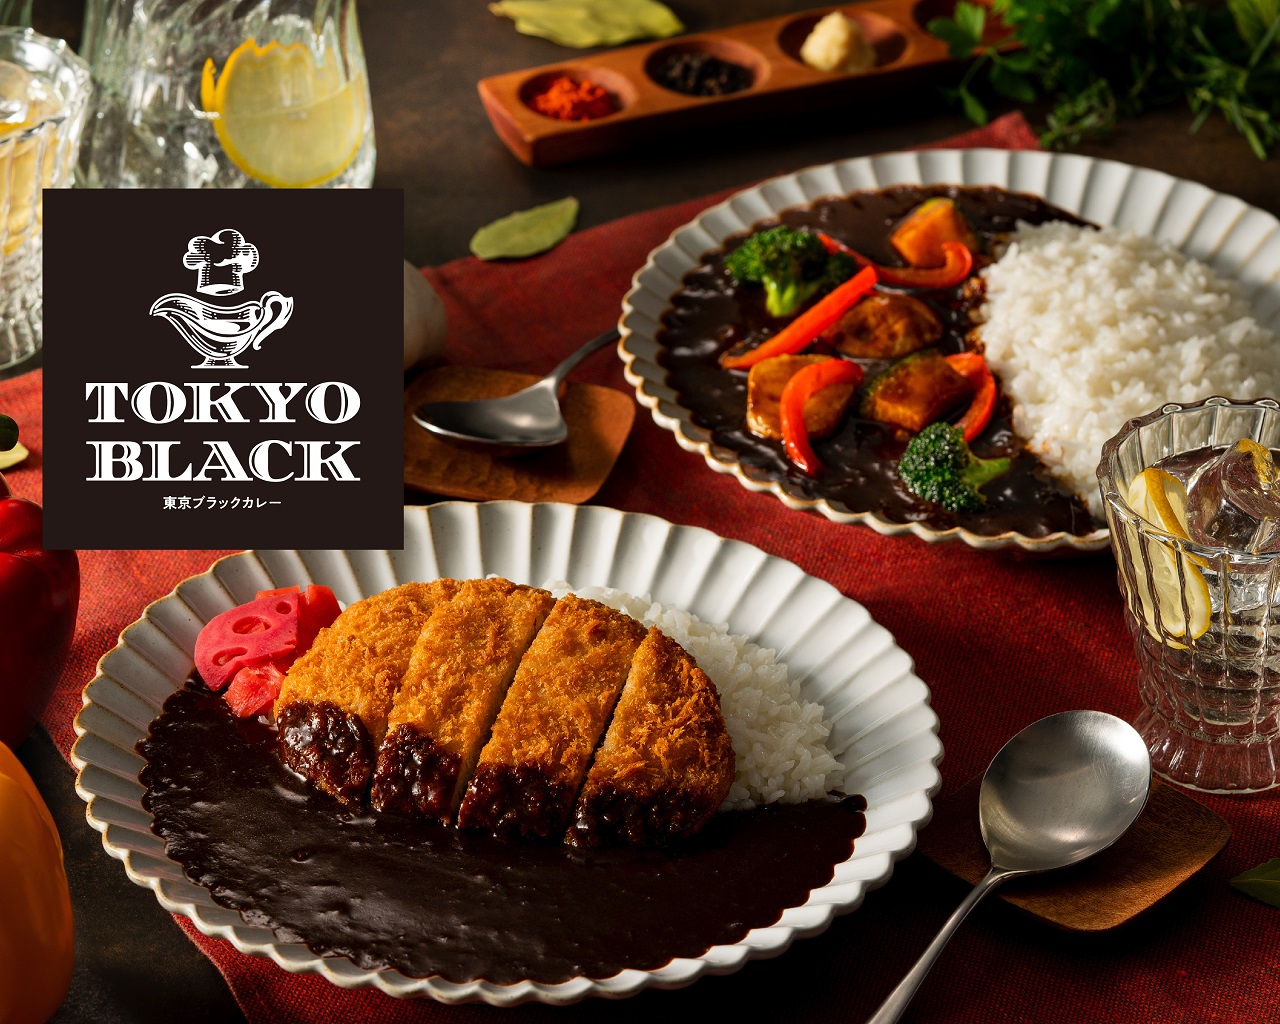 ข้าวแกงกะหรี่ Tokyo Black โตเกียว